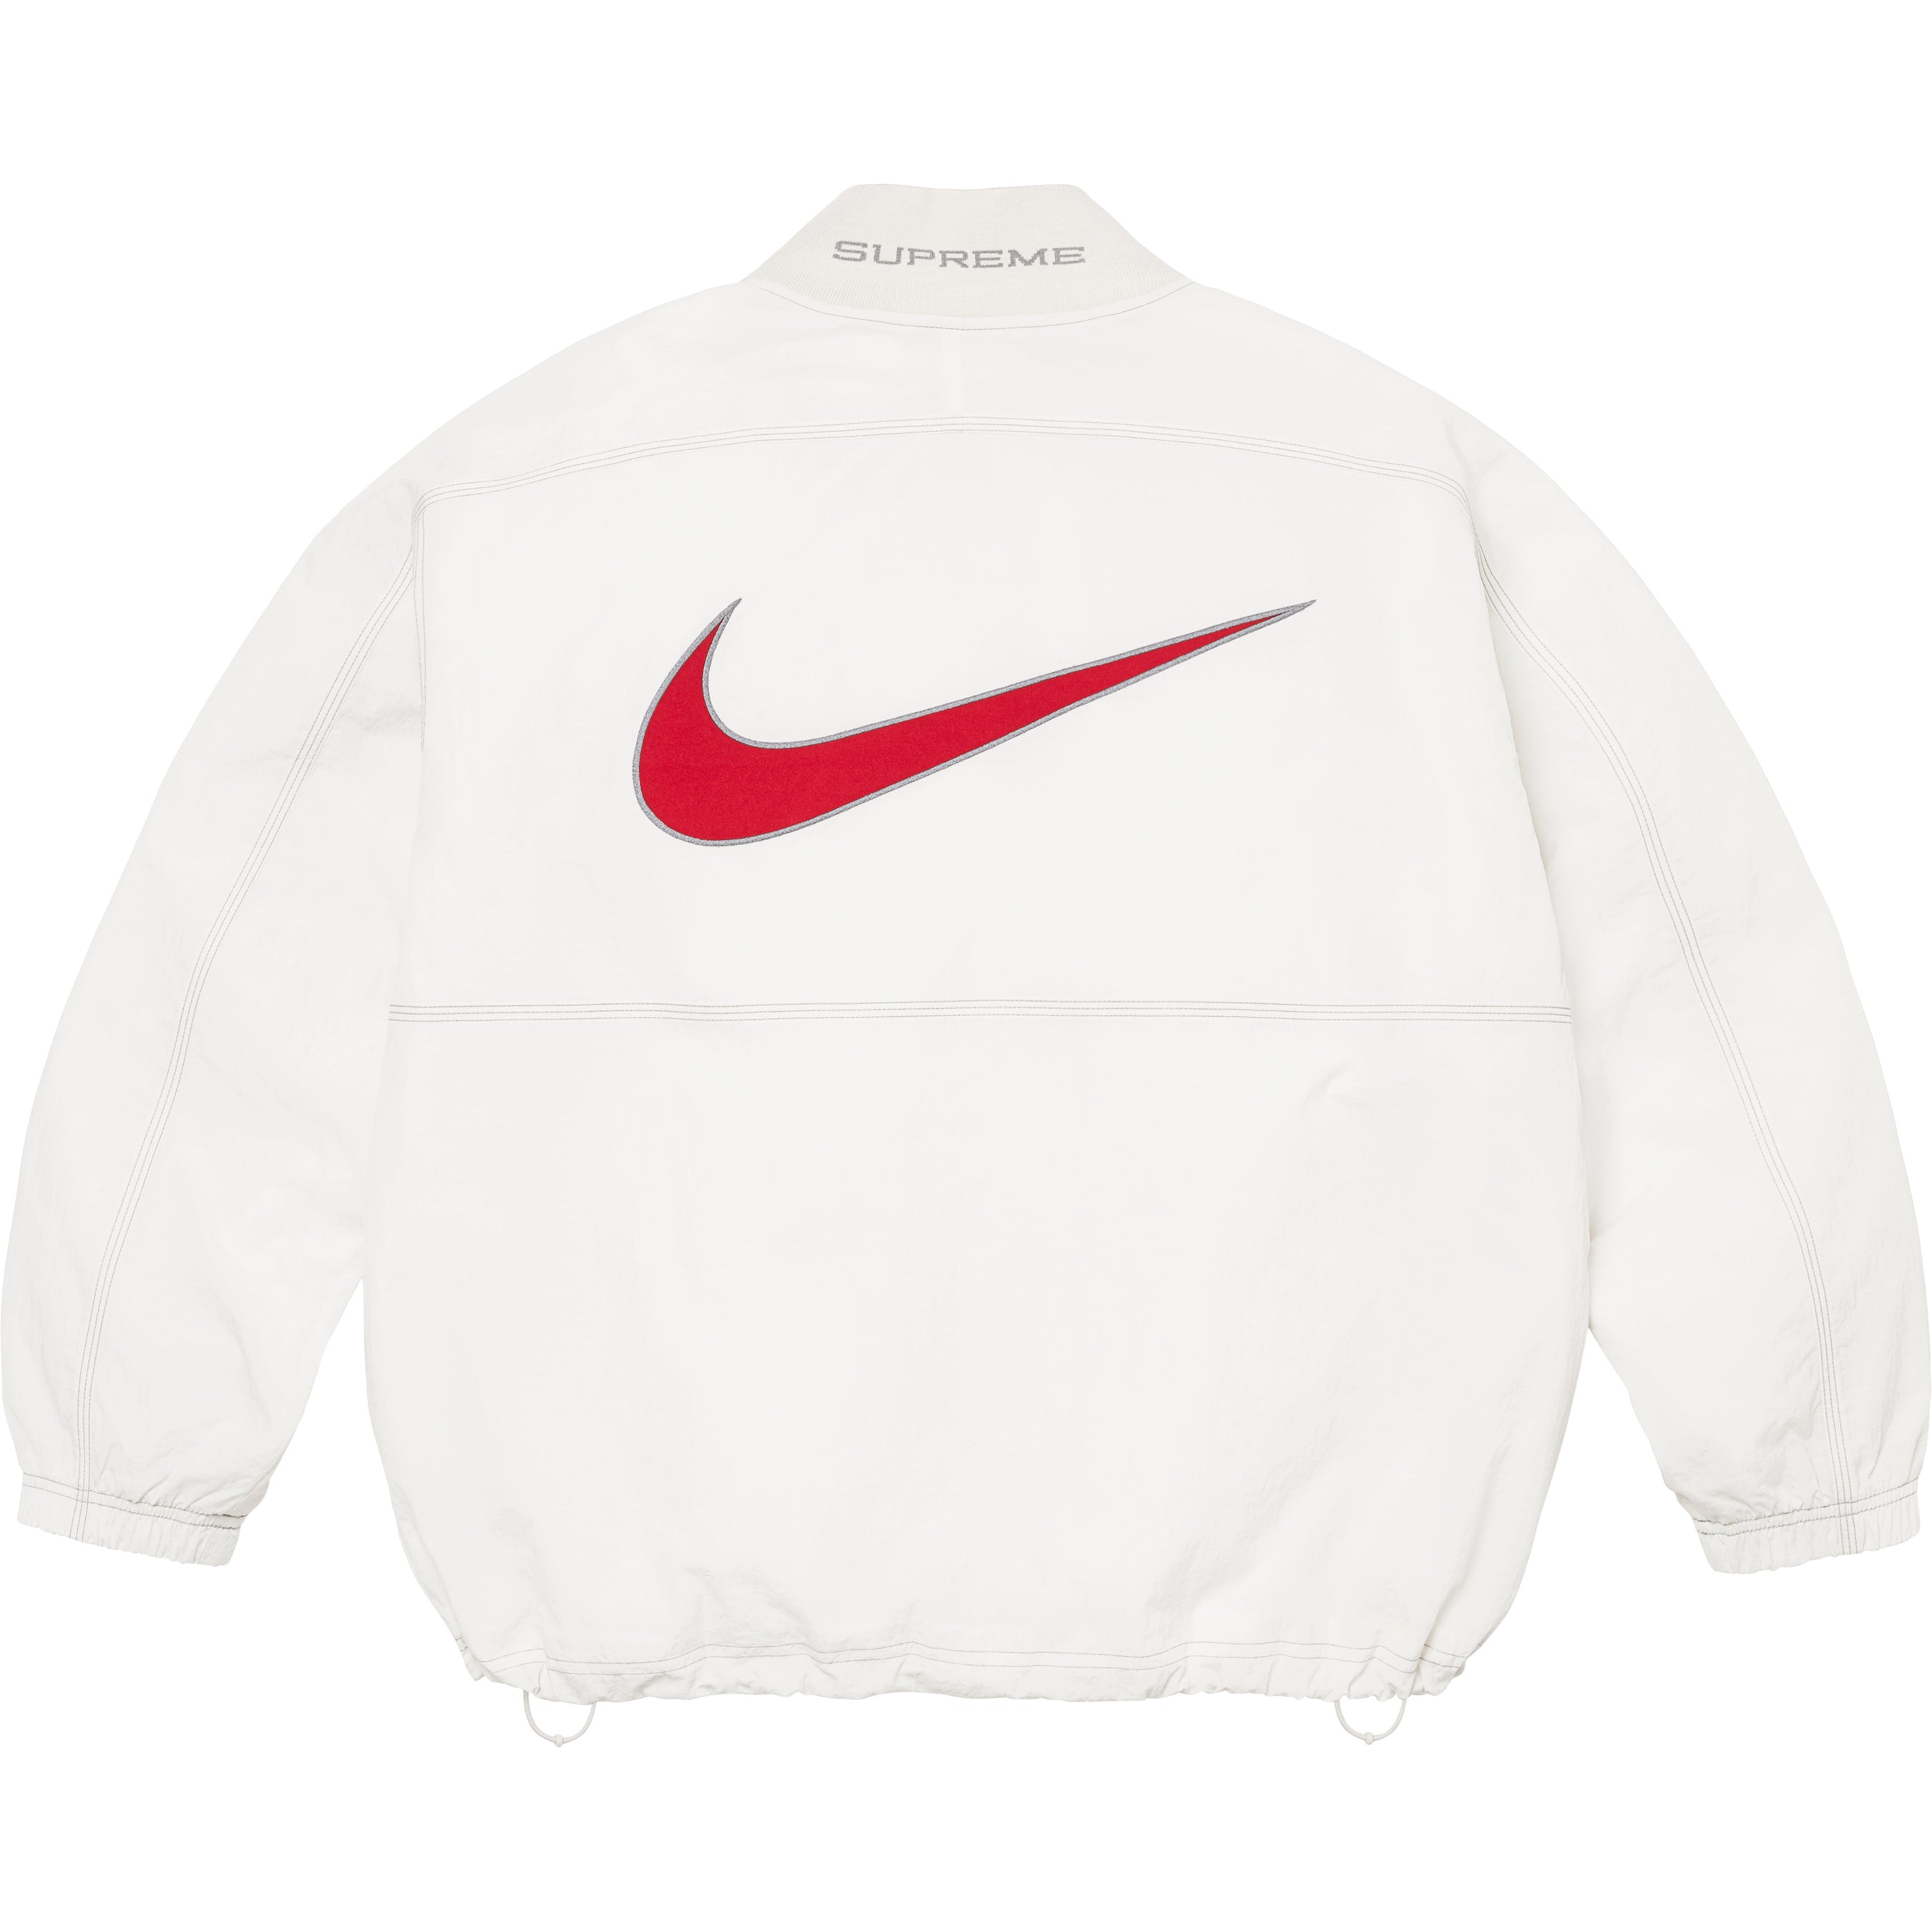 Supreme®/Nike® Ripstop Pullover - Shop - Supreme